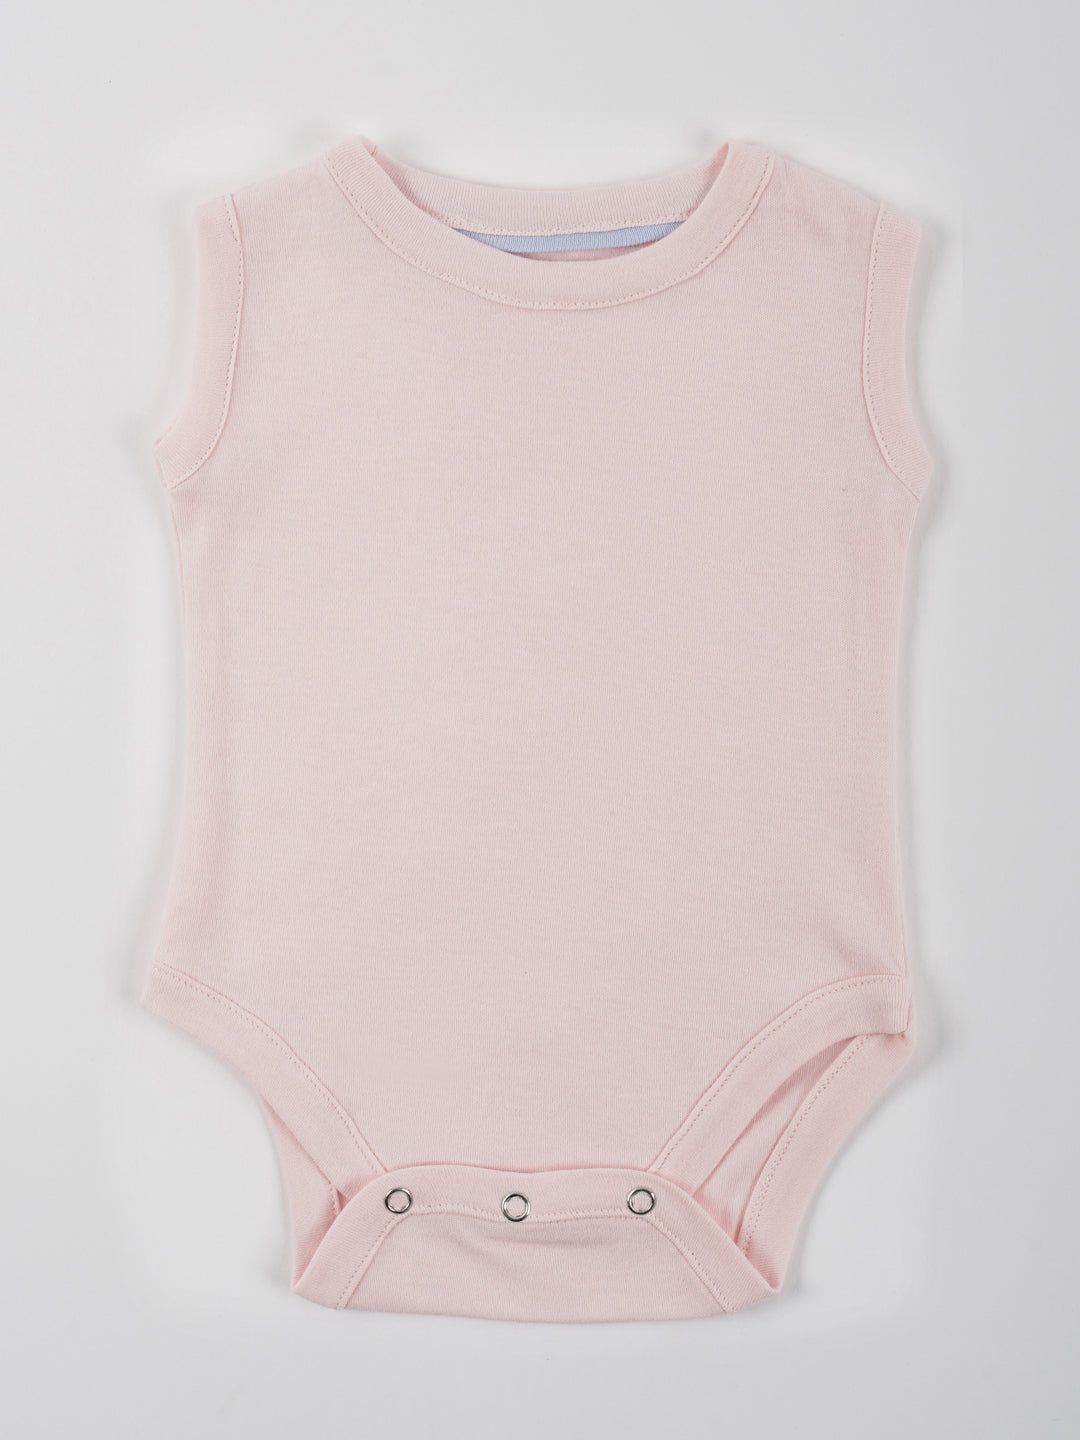 Summer Baby Knit Vest Set Of 4